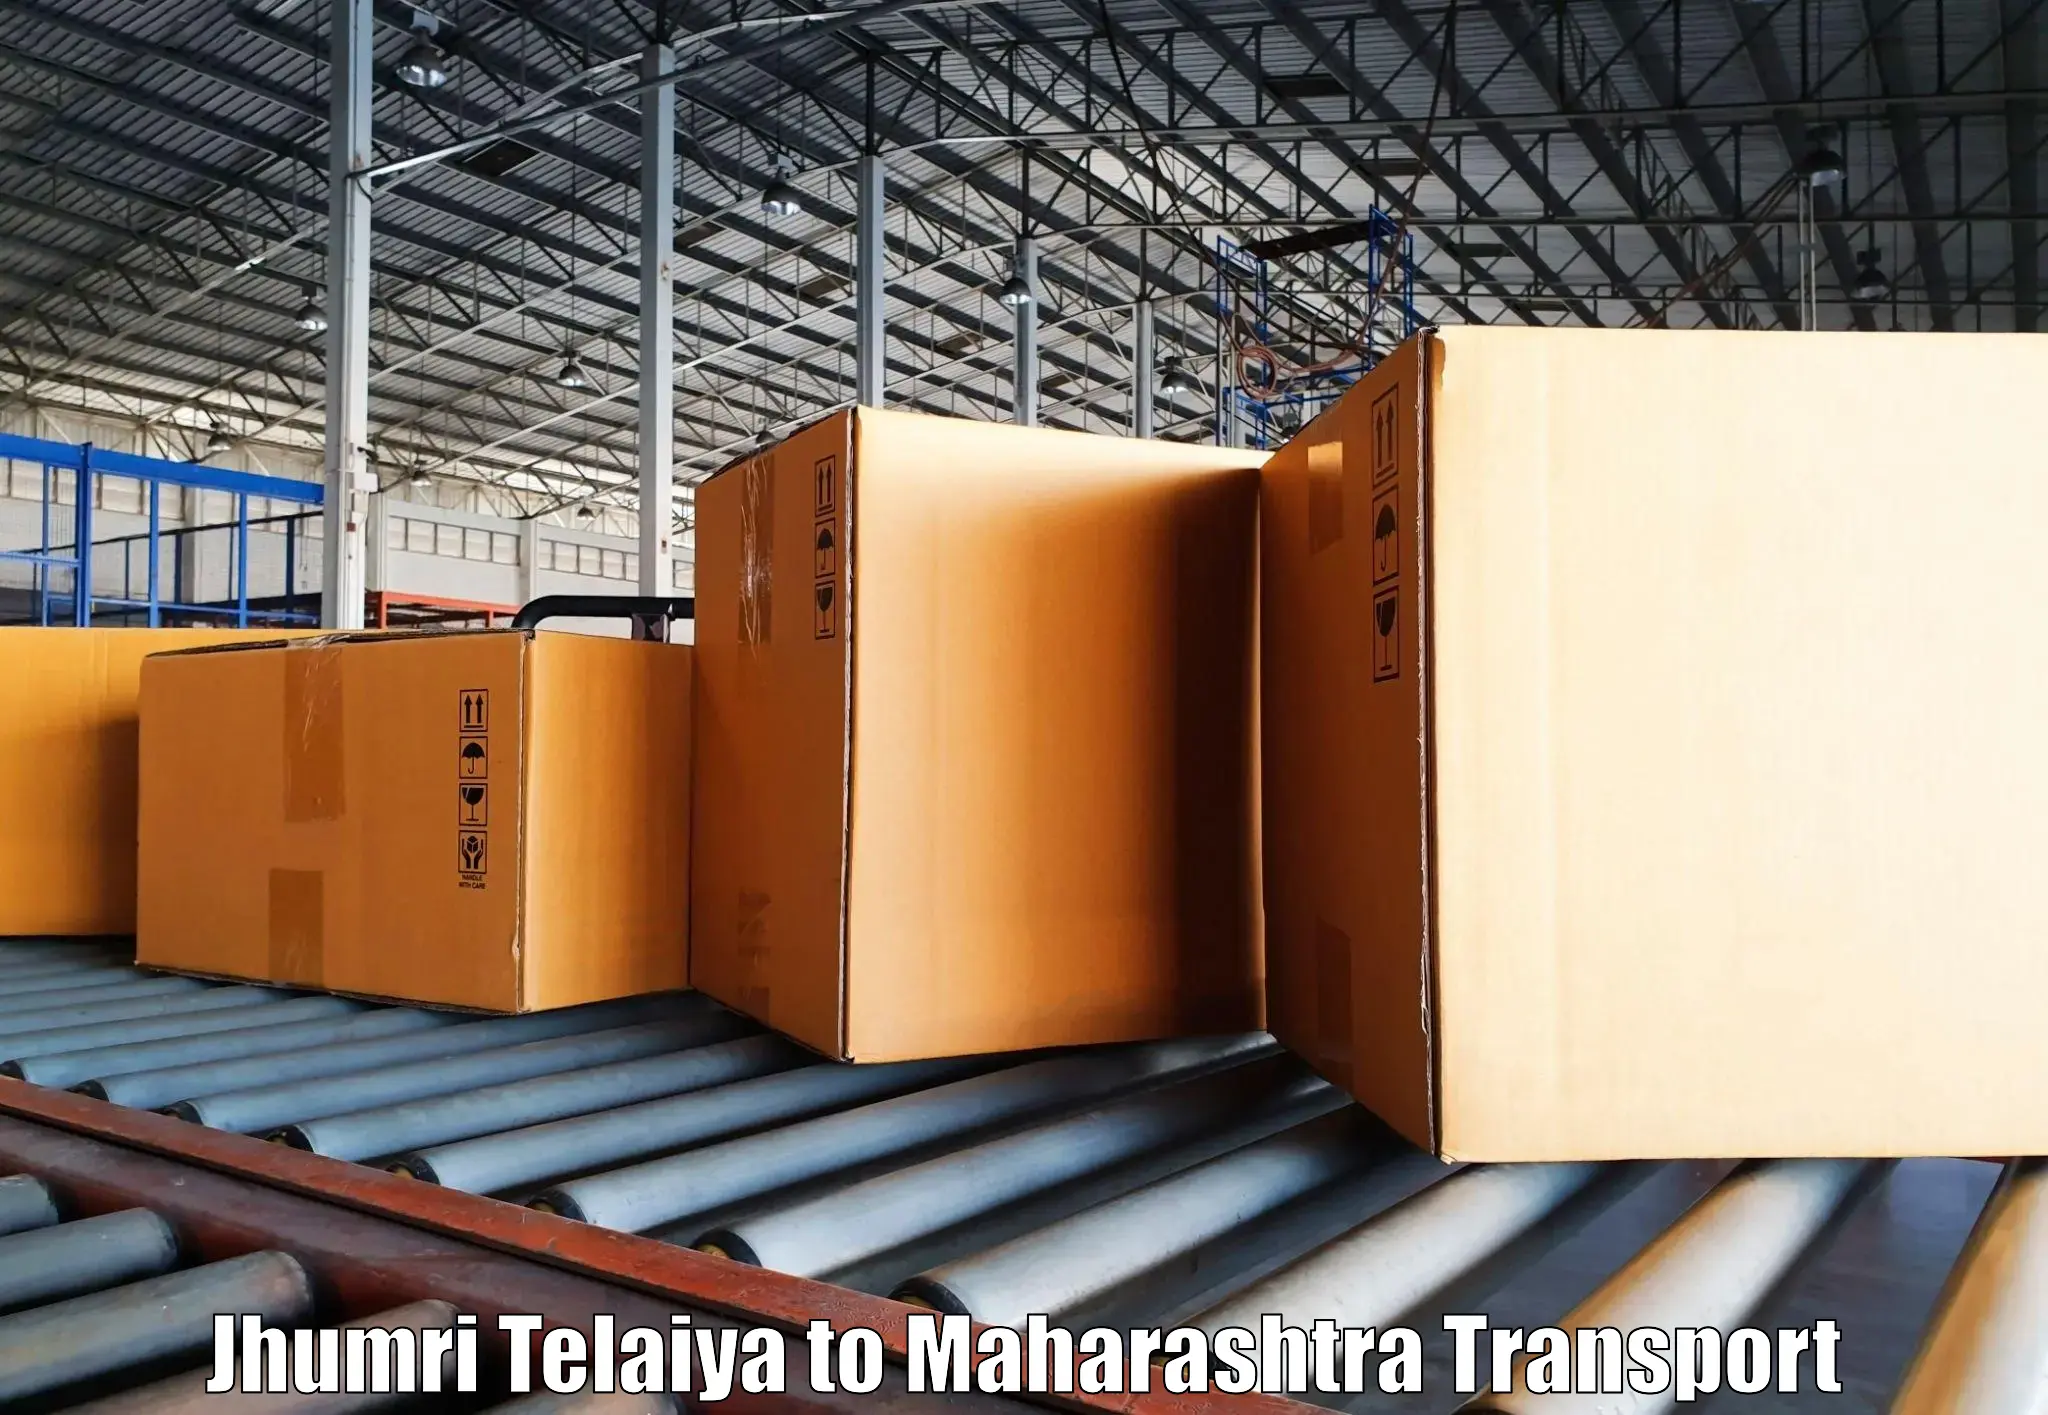 Furniture transport service Jhumri Telaiya to Sangli